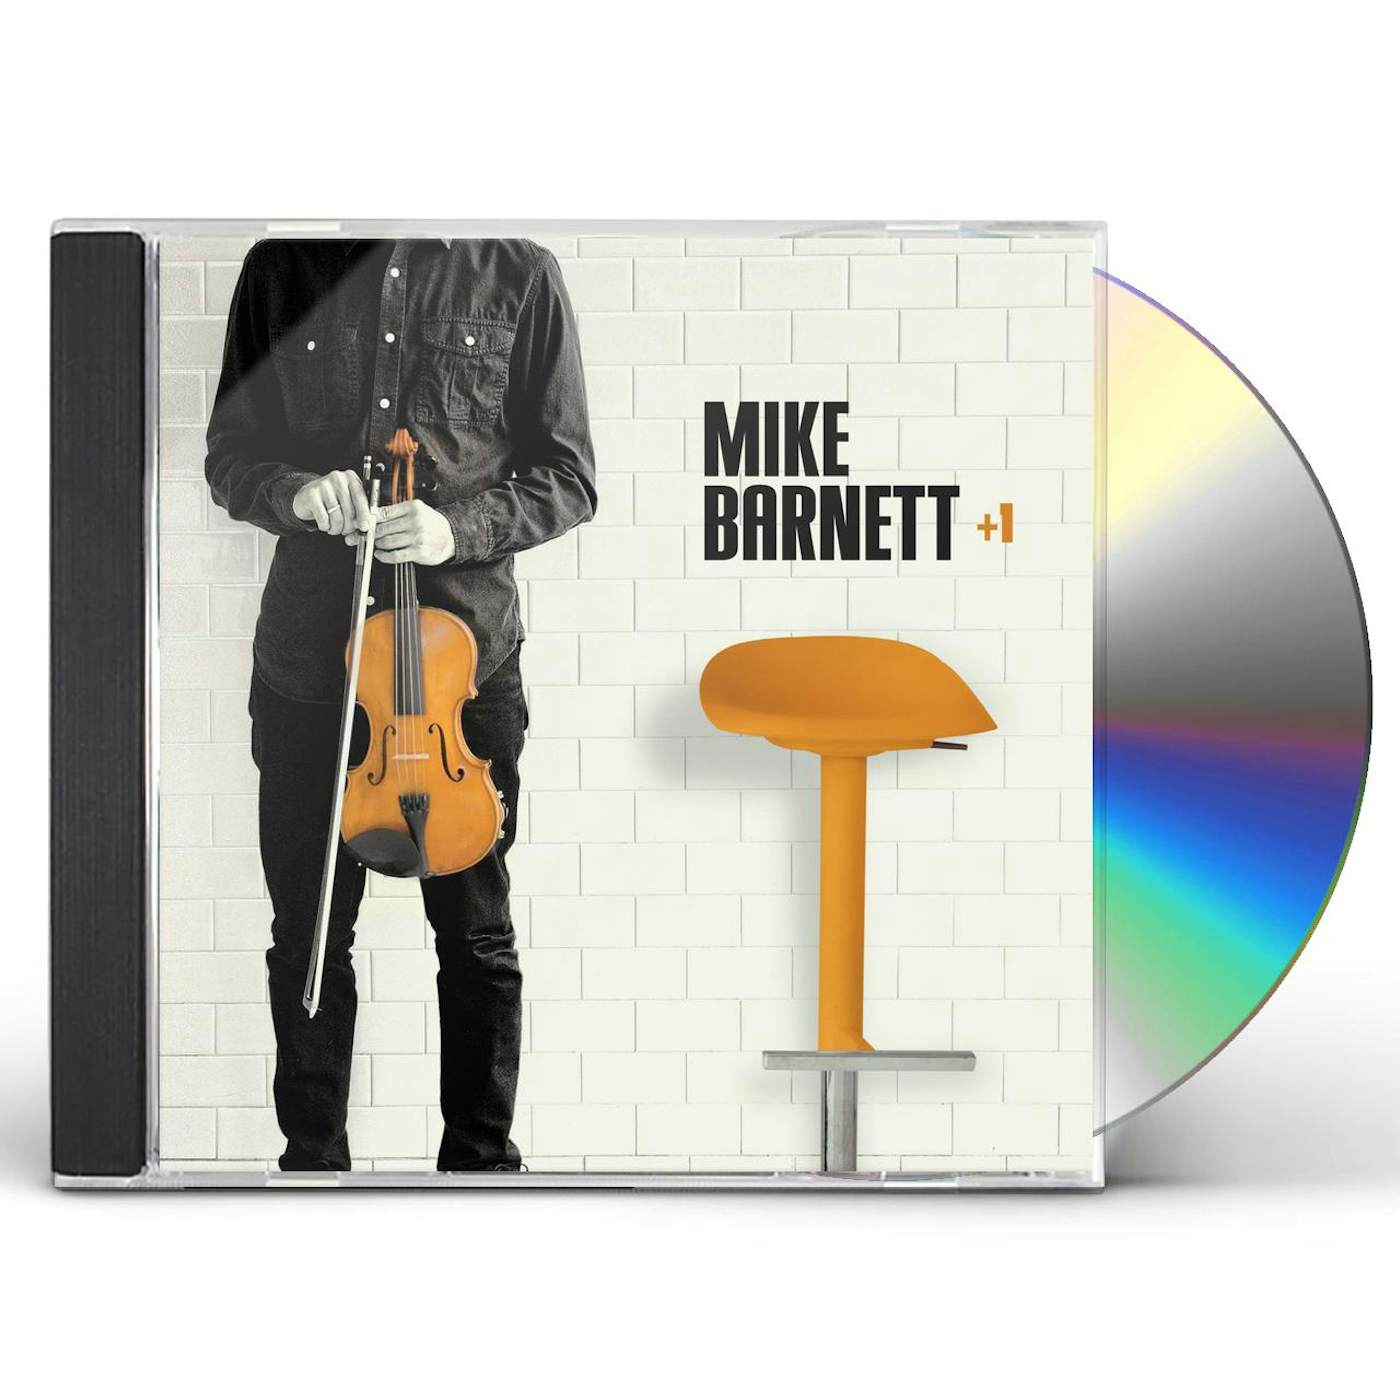 Mike Barnett + 1 CD